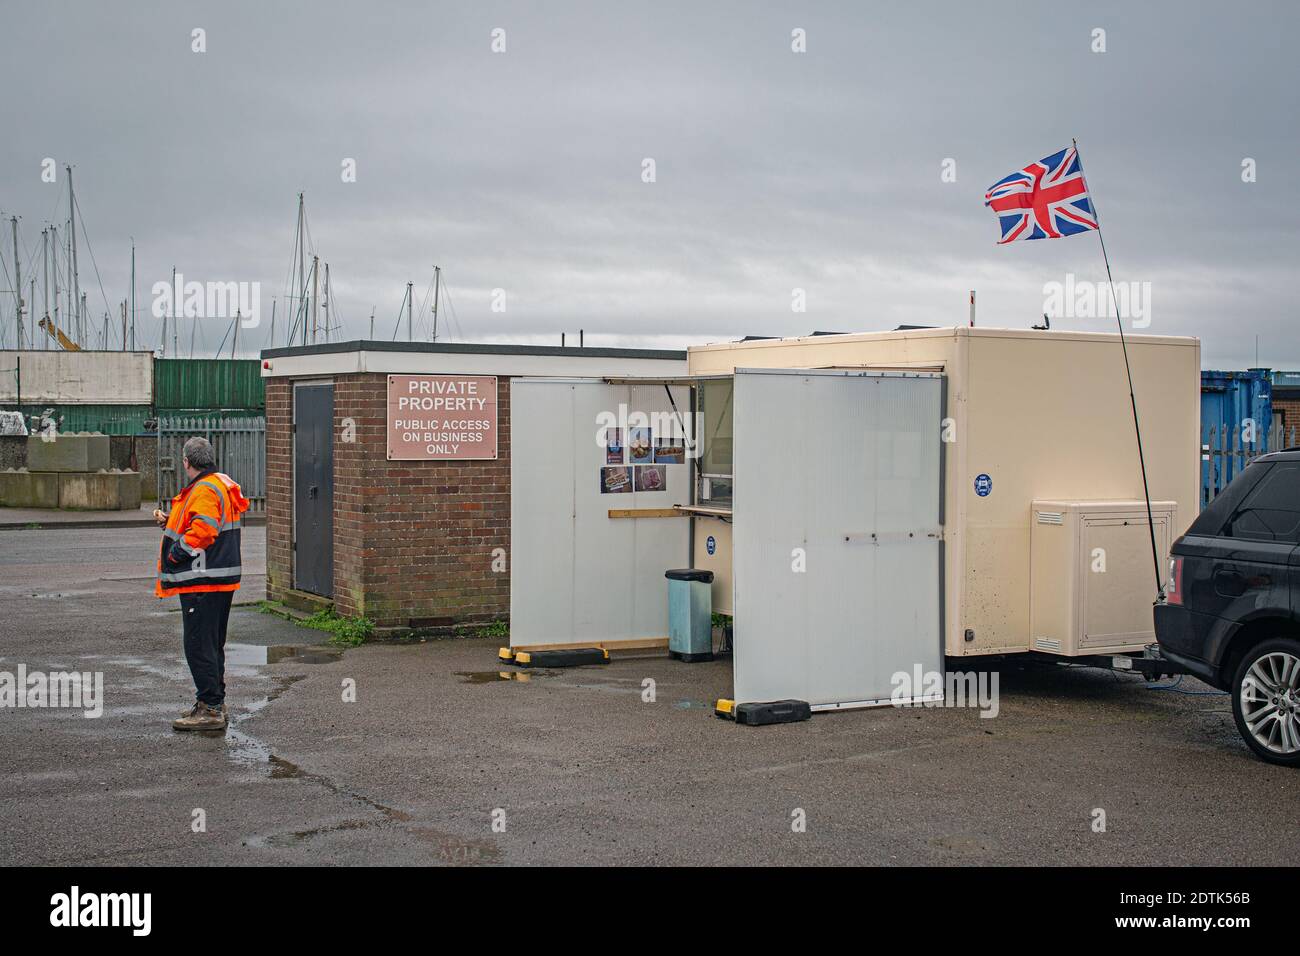 Un ouvrier du port se trouve près d'une camionnette à Brightlingsea , Essex , Angleterre Banque D'Images